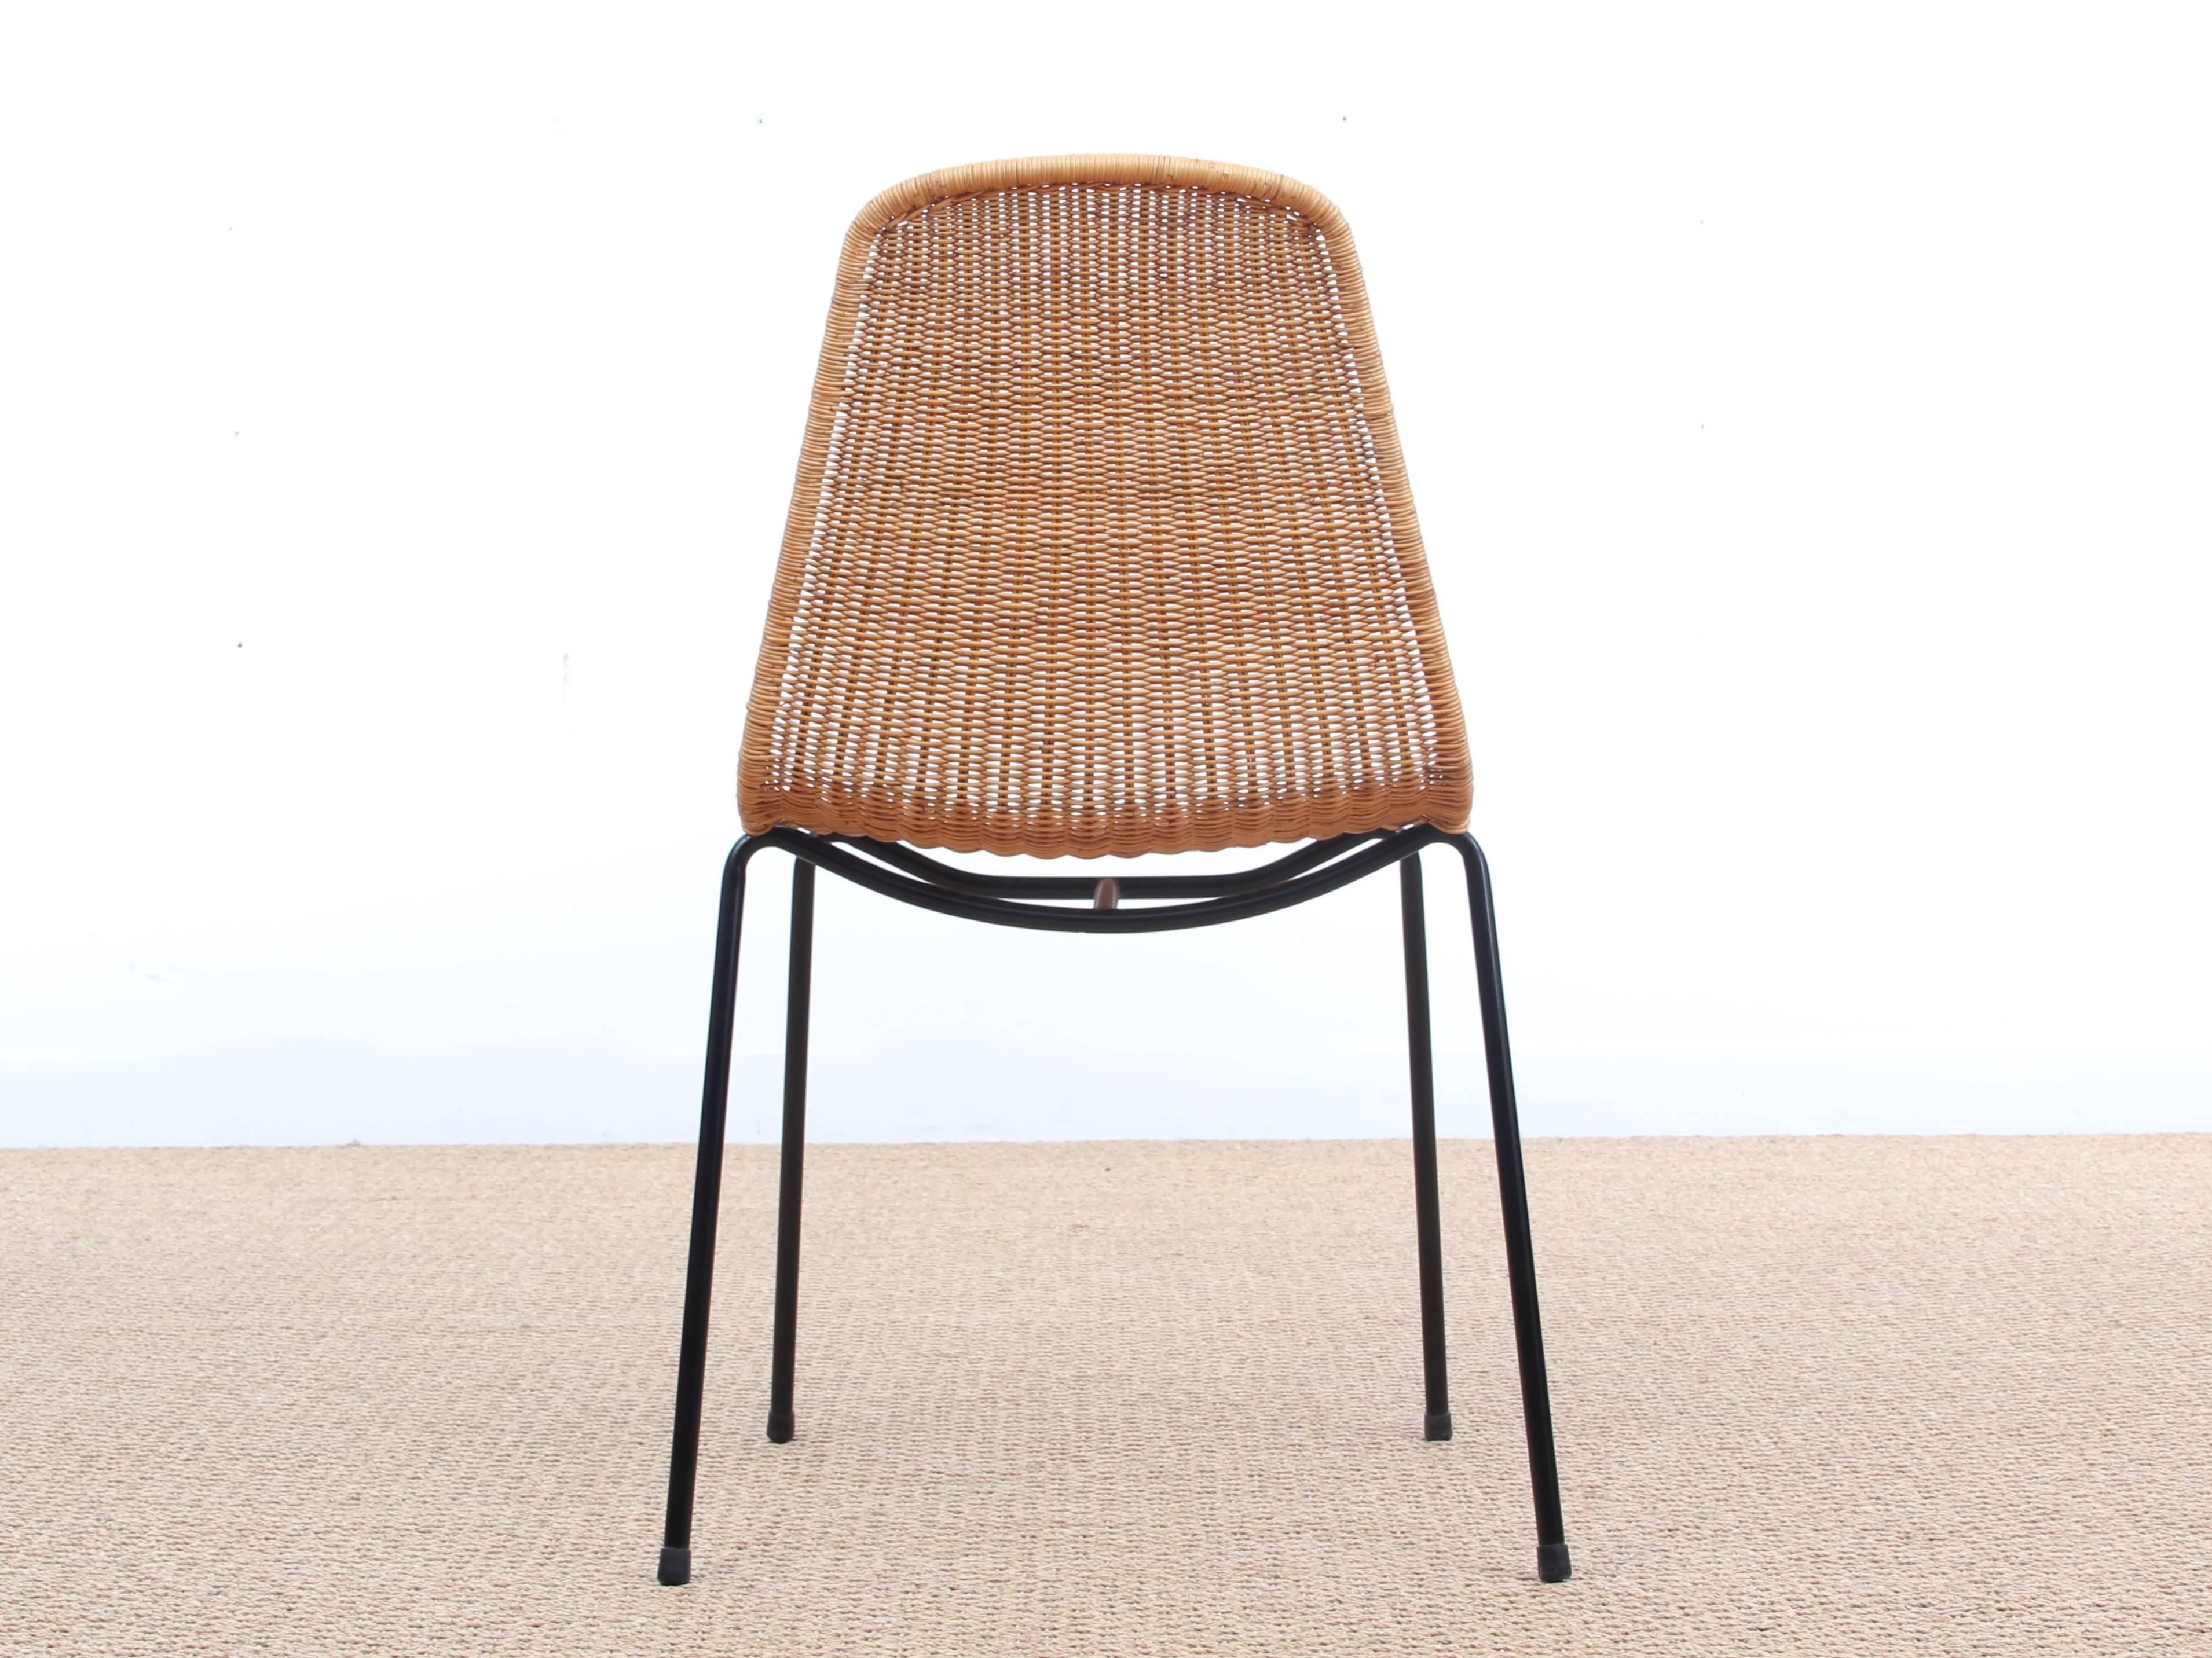 La chaise basket du designer suisse Gian Franco Legler a été conçue en 1951 pour le restaurant basket en Italie. Cette chaise empilable confortable a reçu en 1953 le 